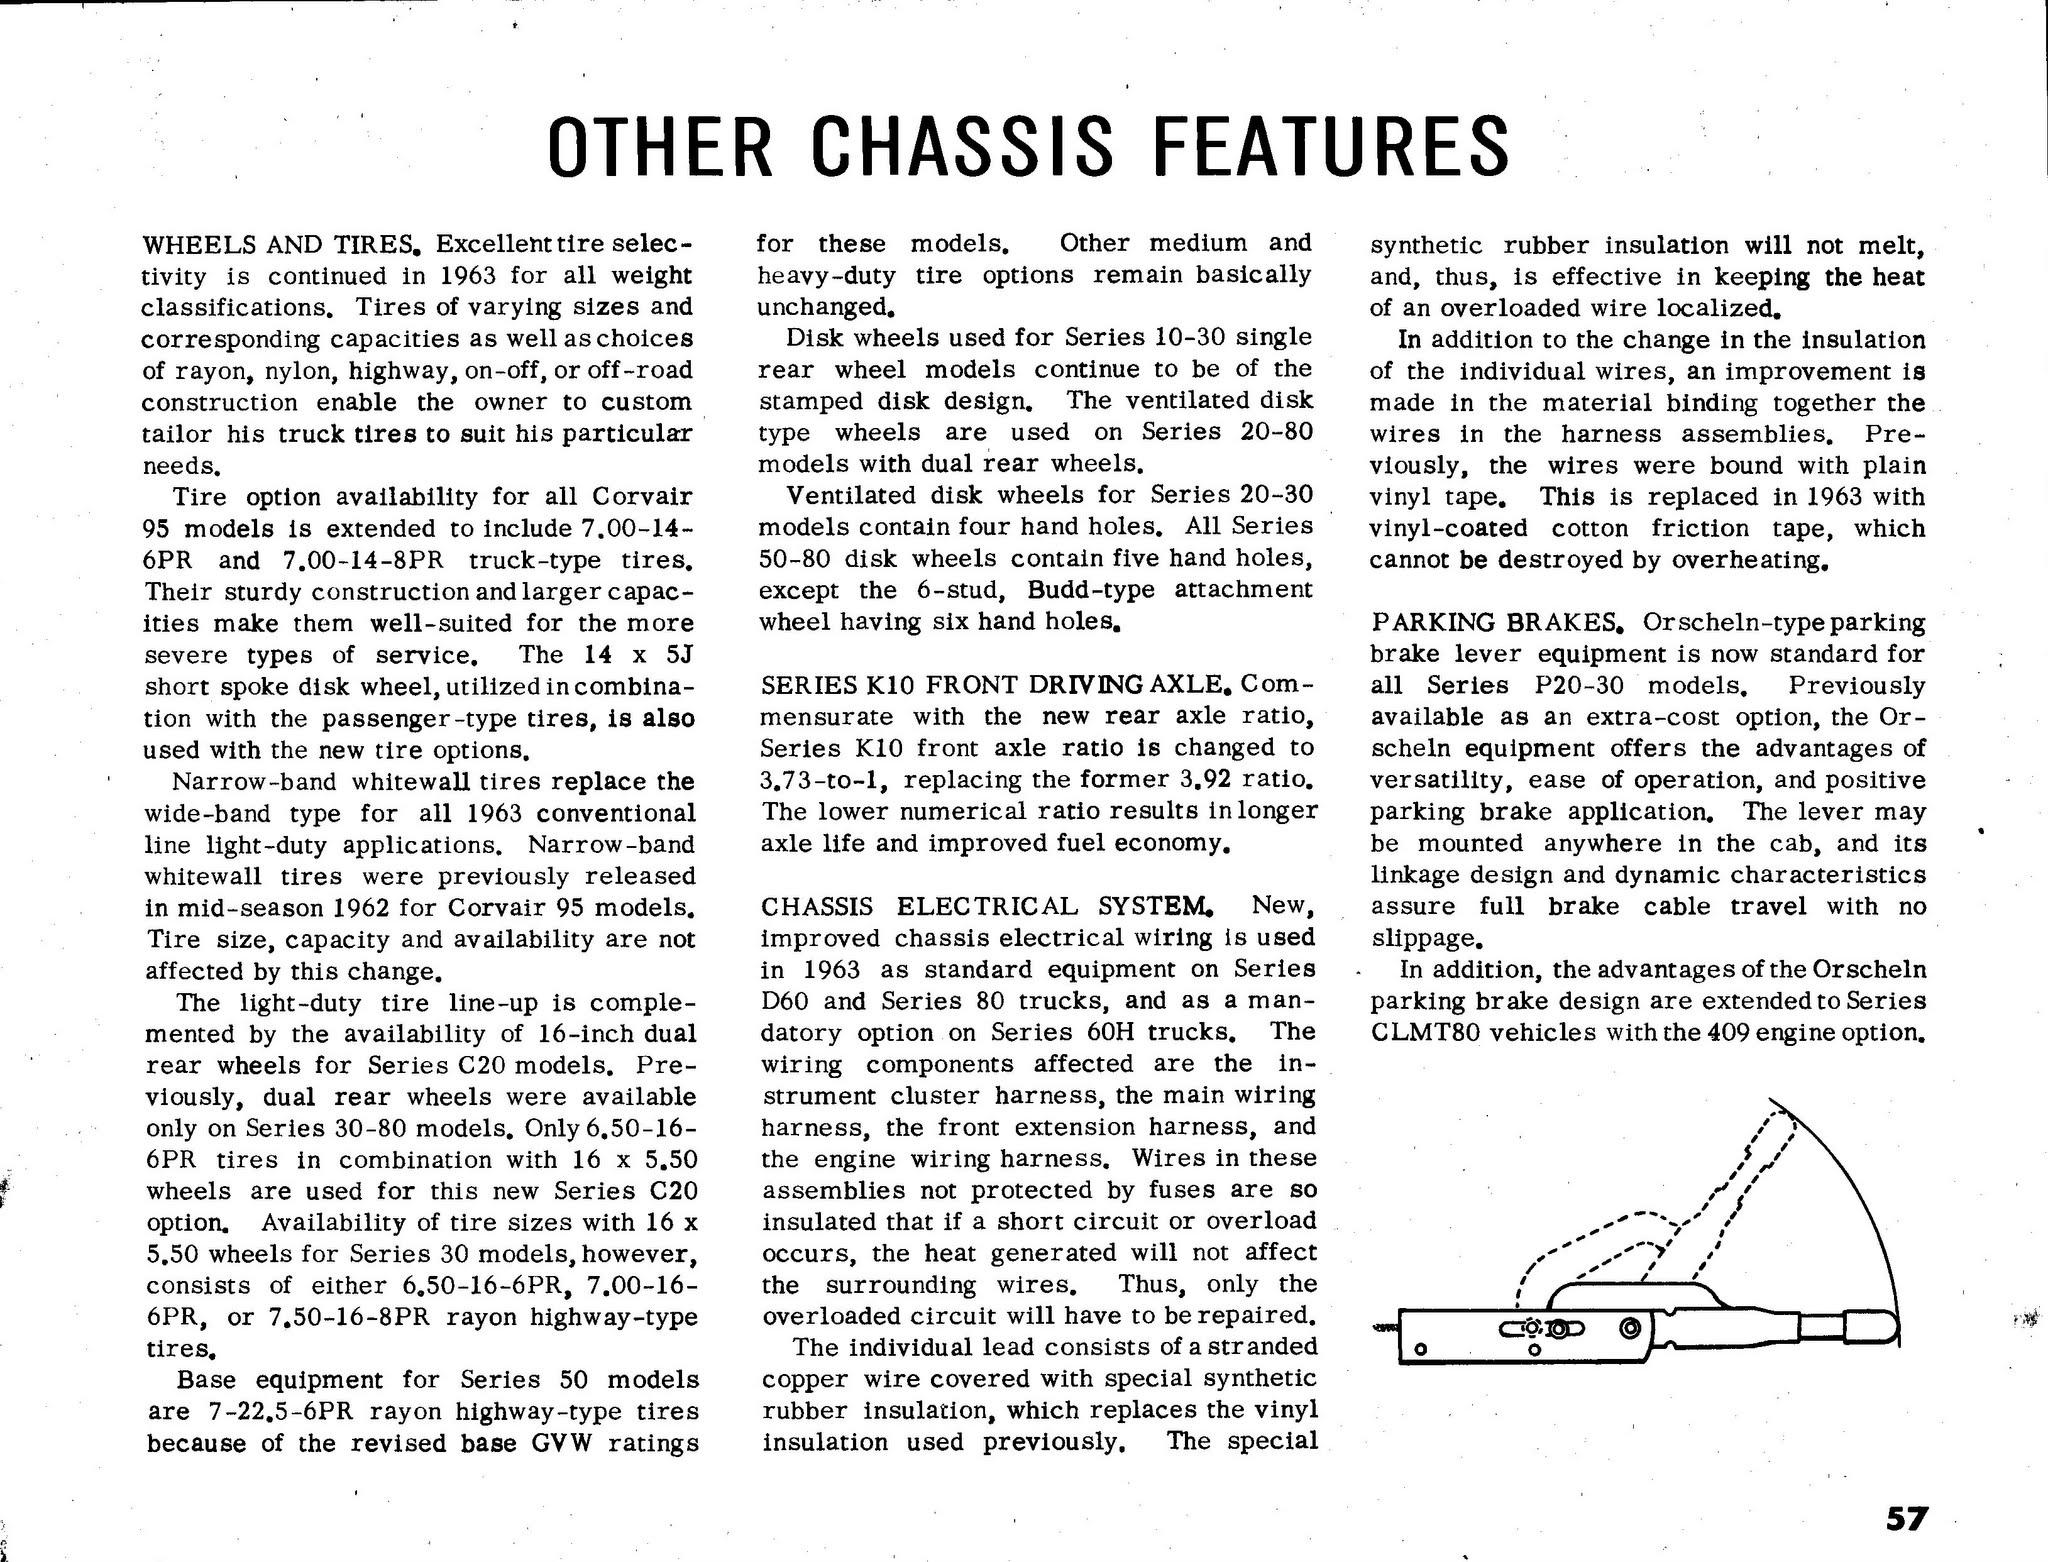 1963_Chevrolet_Truck_Engineering_Features-57